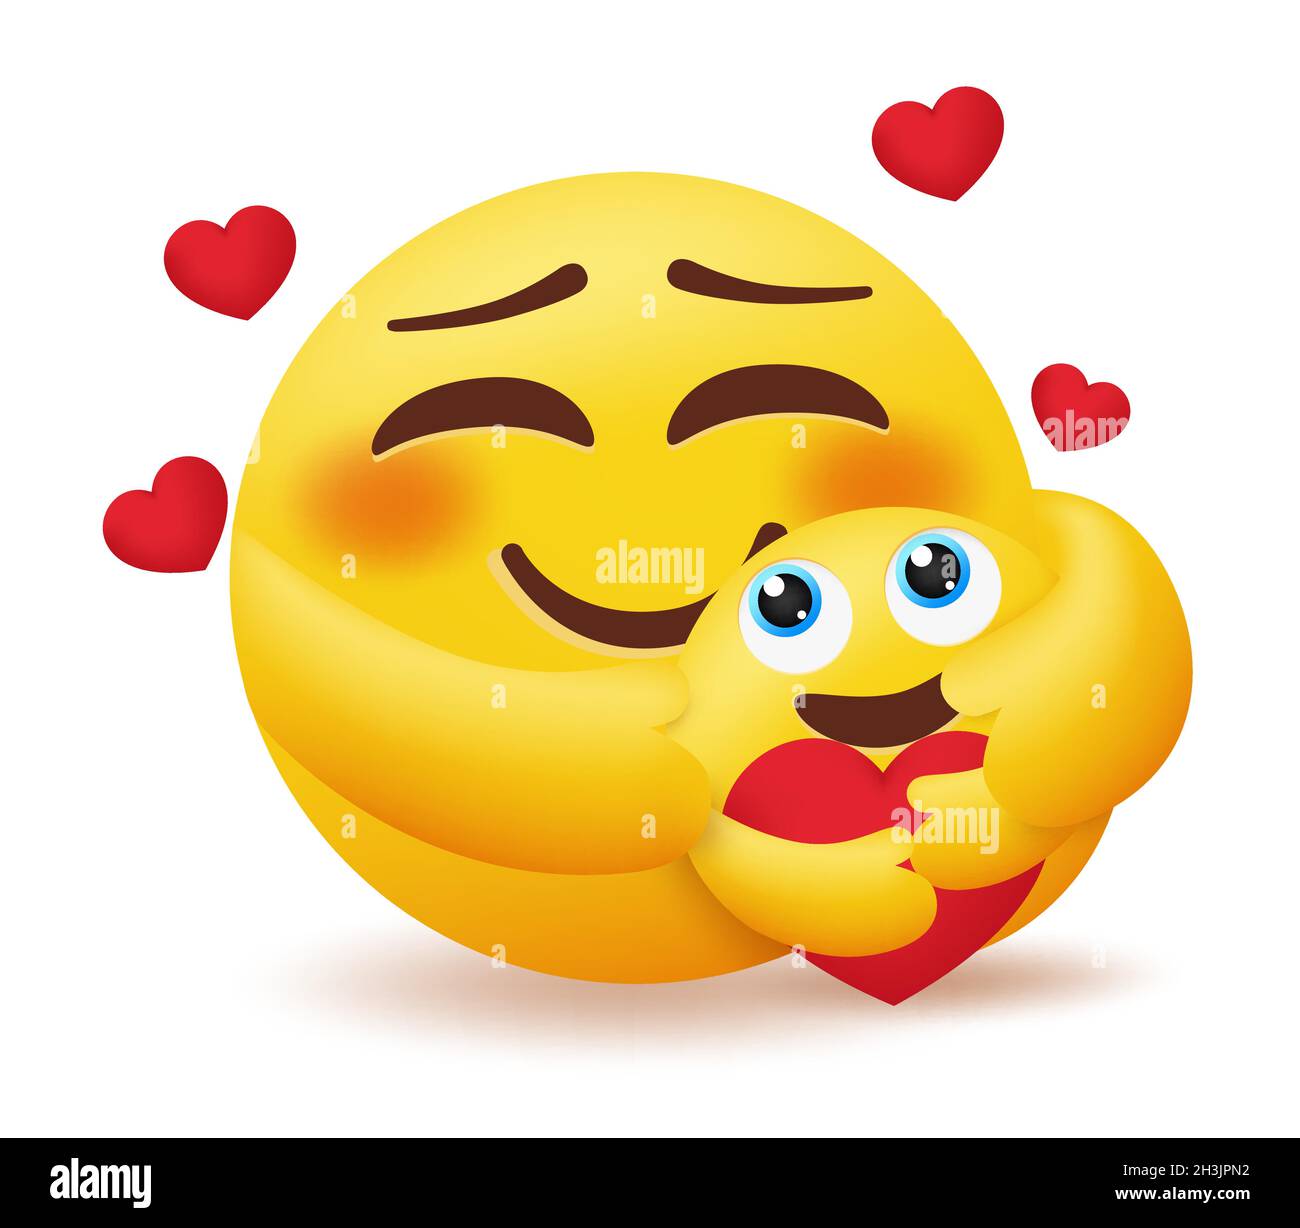 Emoji Mutter und Kind Vektor Konzept Design. Emoticon Mama umarmt, fürsorglich und liebend glückliches Kind mit Herzpflegeelement für den Tag der Smiley-Mutter. Stock Vektor